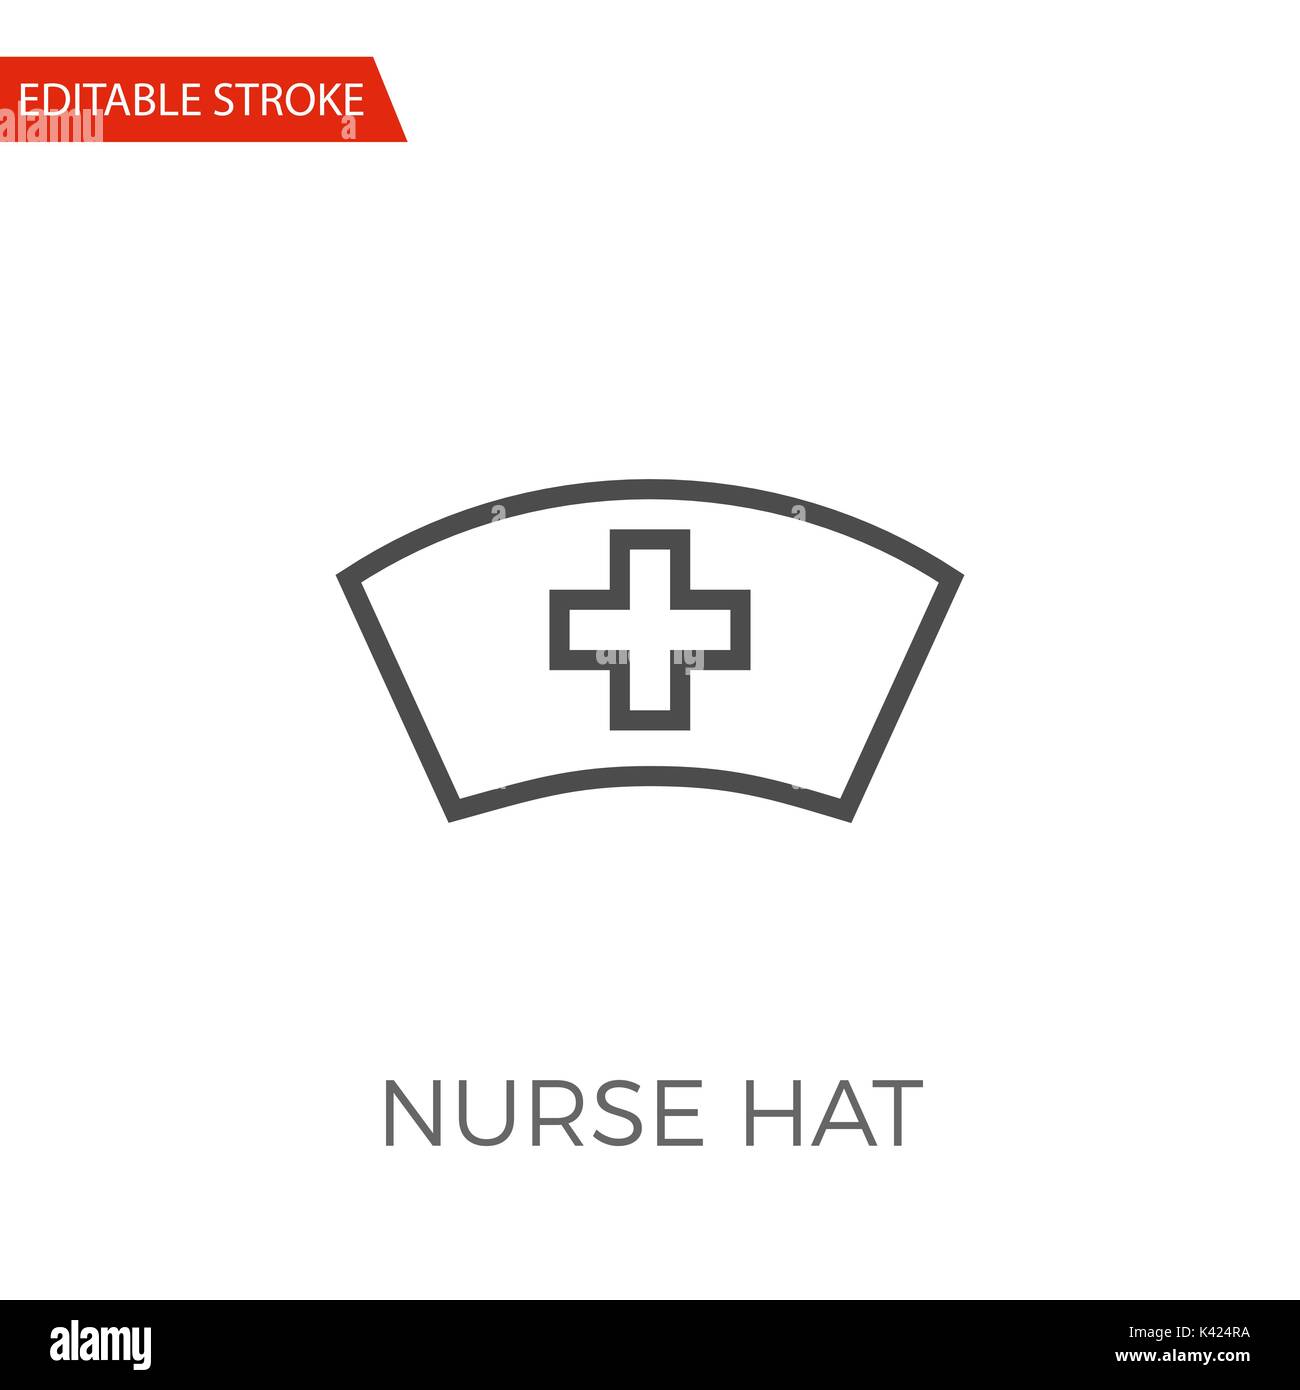 Nurse Hat Svg, Nurse Hat Cut File, Red Cross Svg, Medical Sign Svg,  Hospital Svg, Doctor Svg, Medical Student Svg, Silhouette, Stencil.